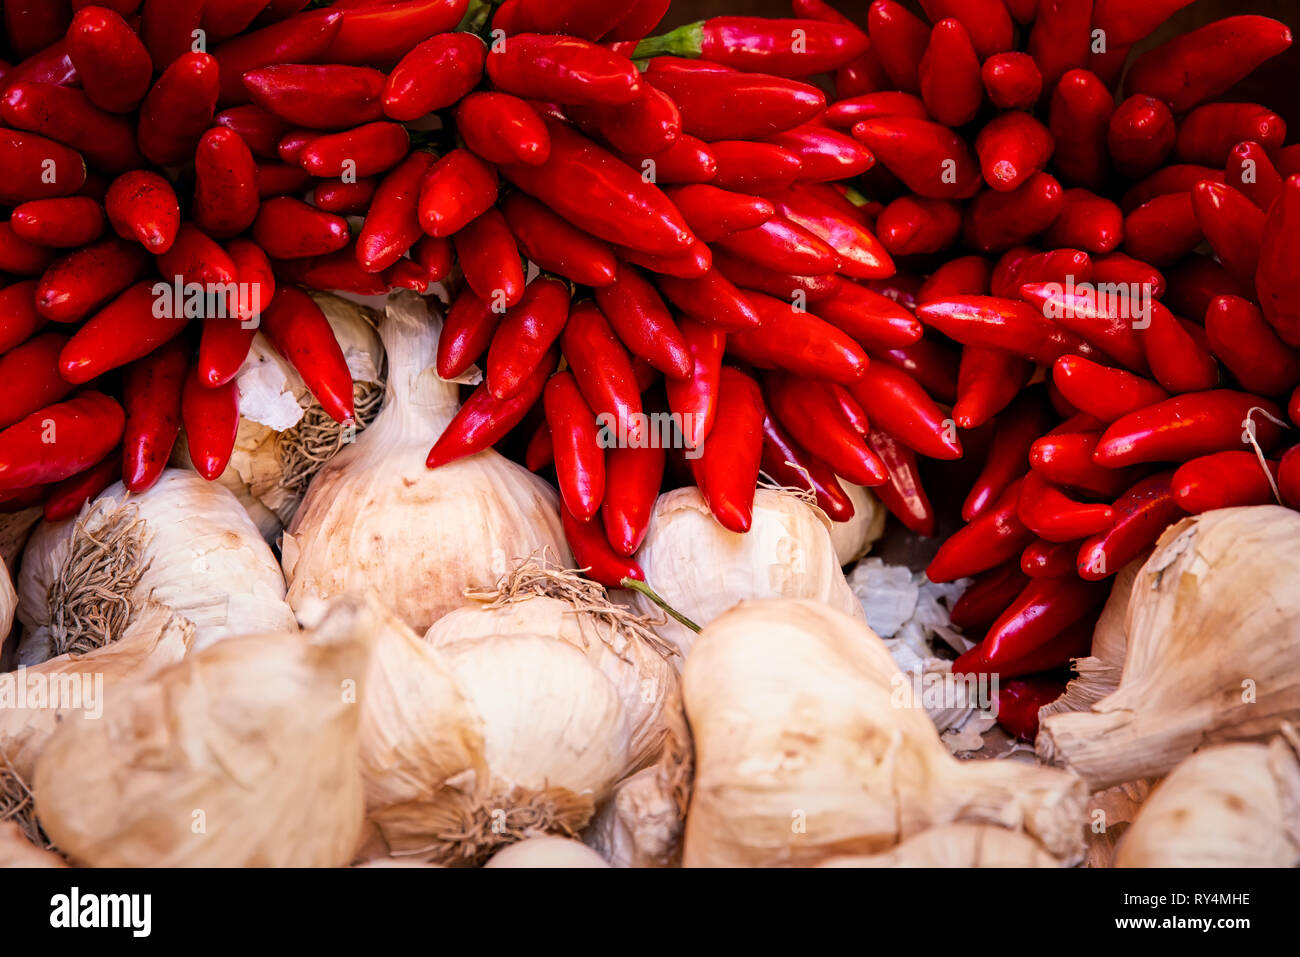 Chili peppers, garlic, Vienna - Austria, Naschmarkt, Market - Retail Space Stock Photo